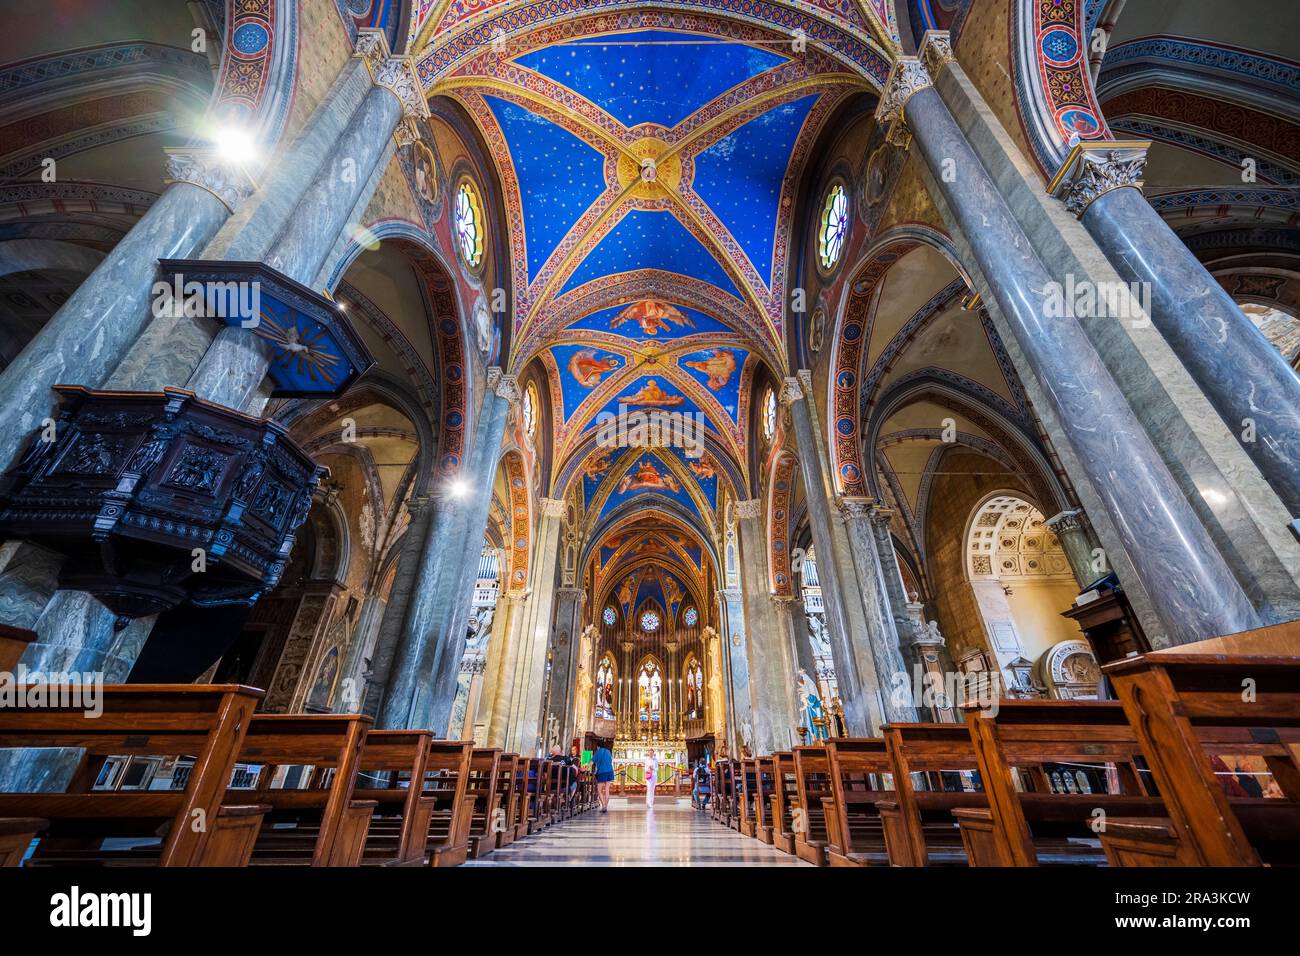 Interior of Basilica di Santa Maria sopra Minerva (Basilica of Saint Mary above Minerva), Rome, Lazio, Italy Stock Photo